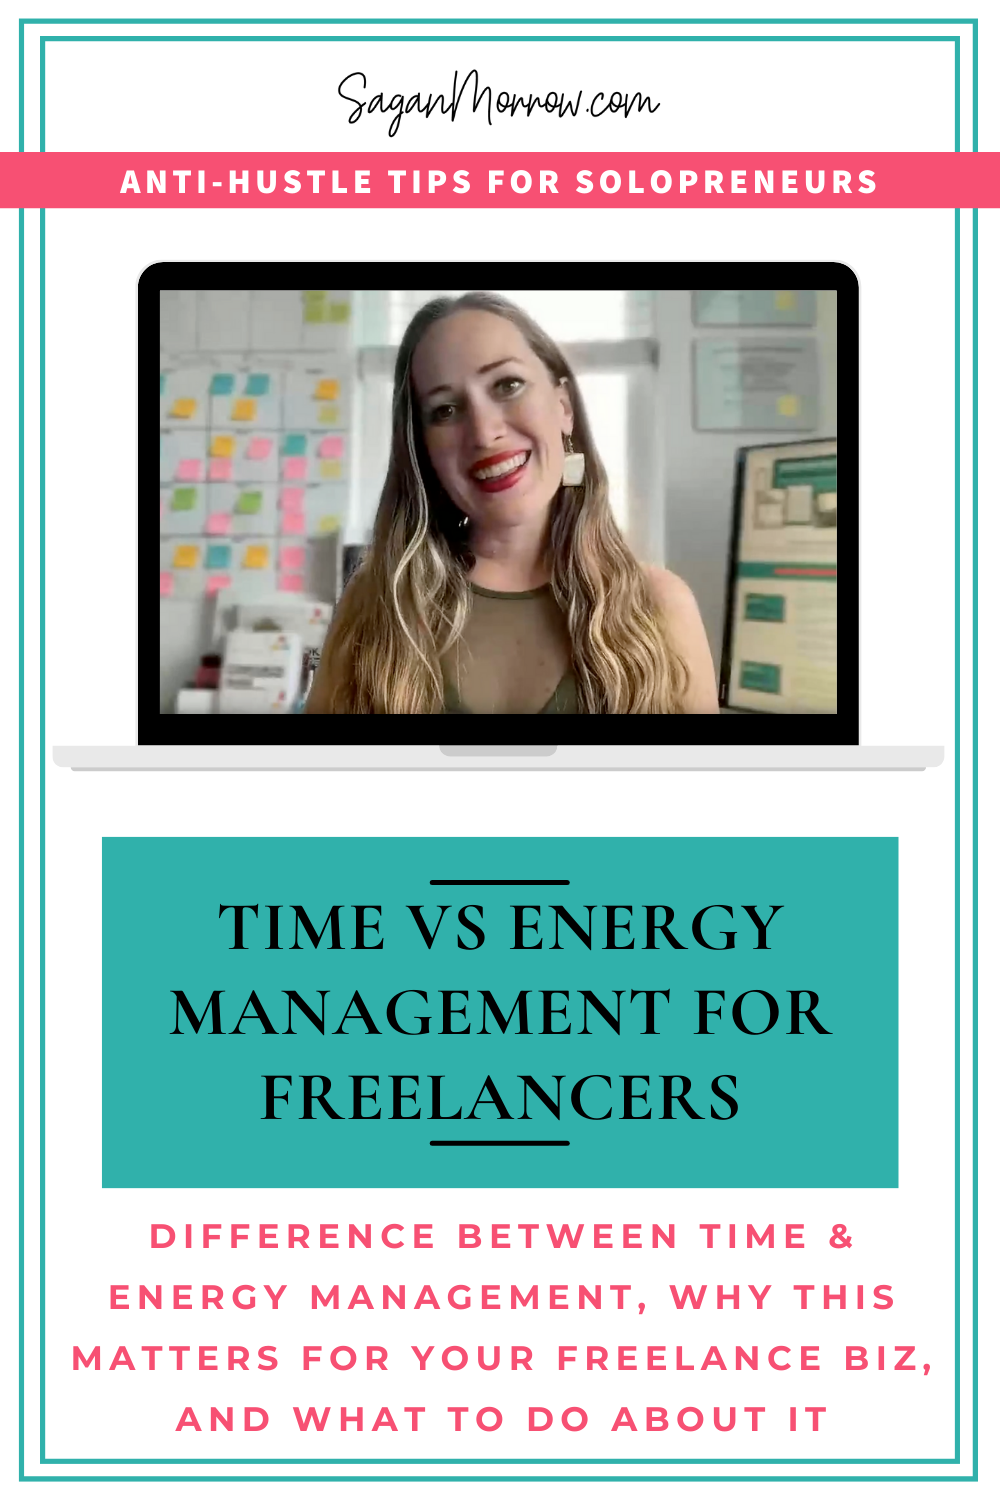 Time management vs energy management for freelancers